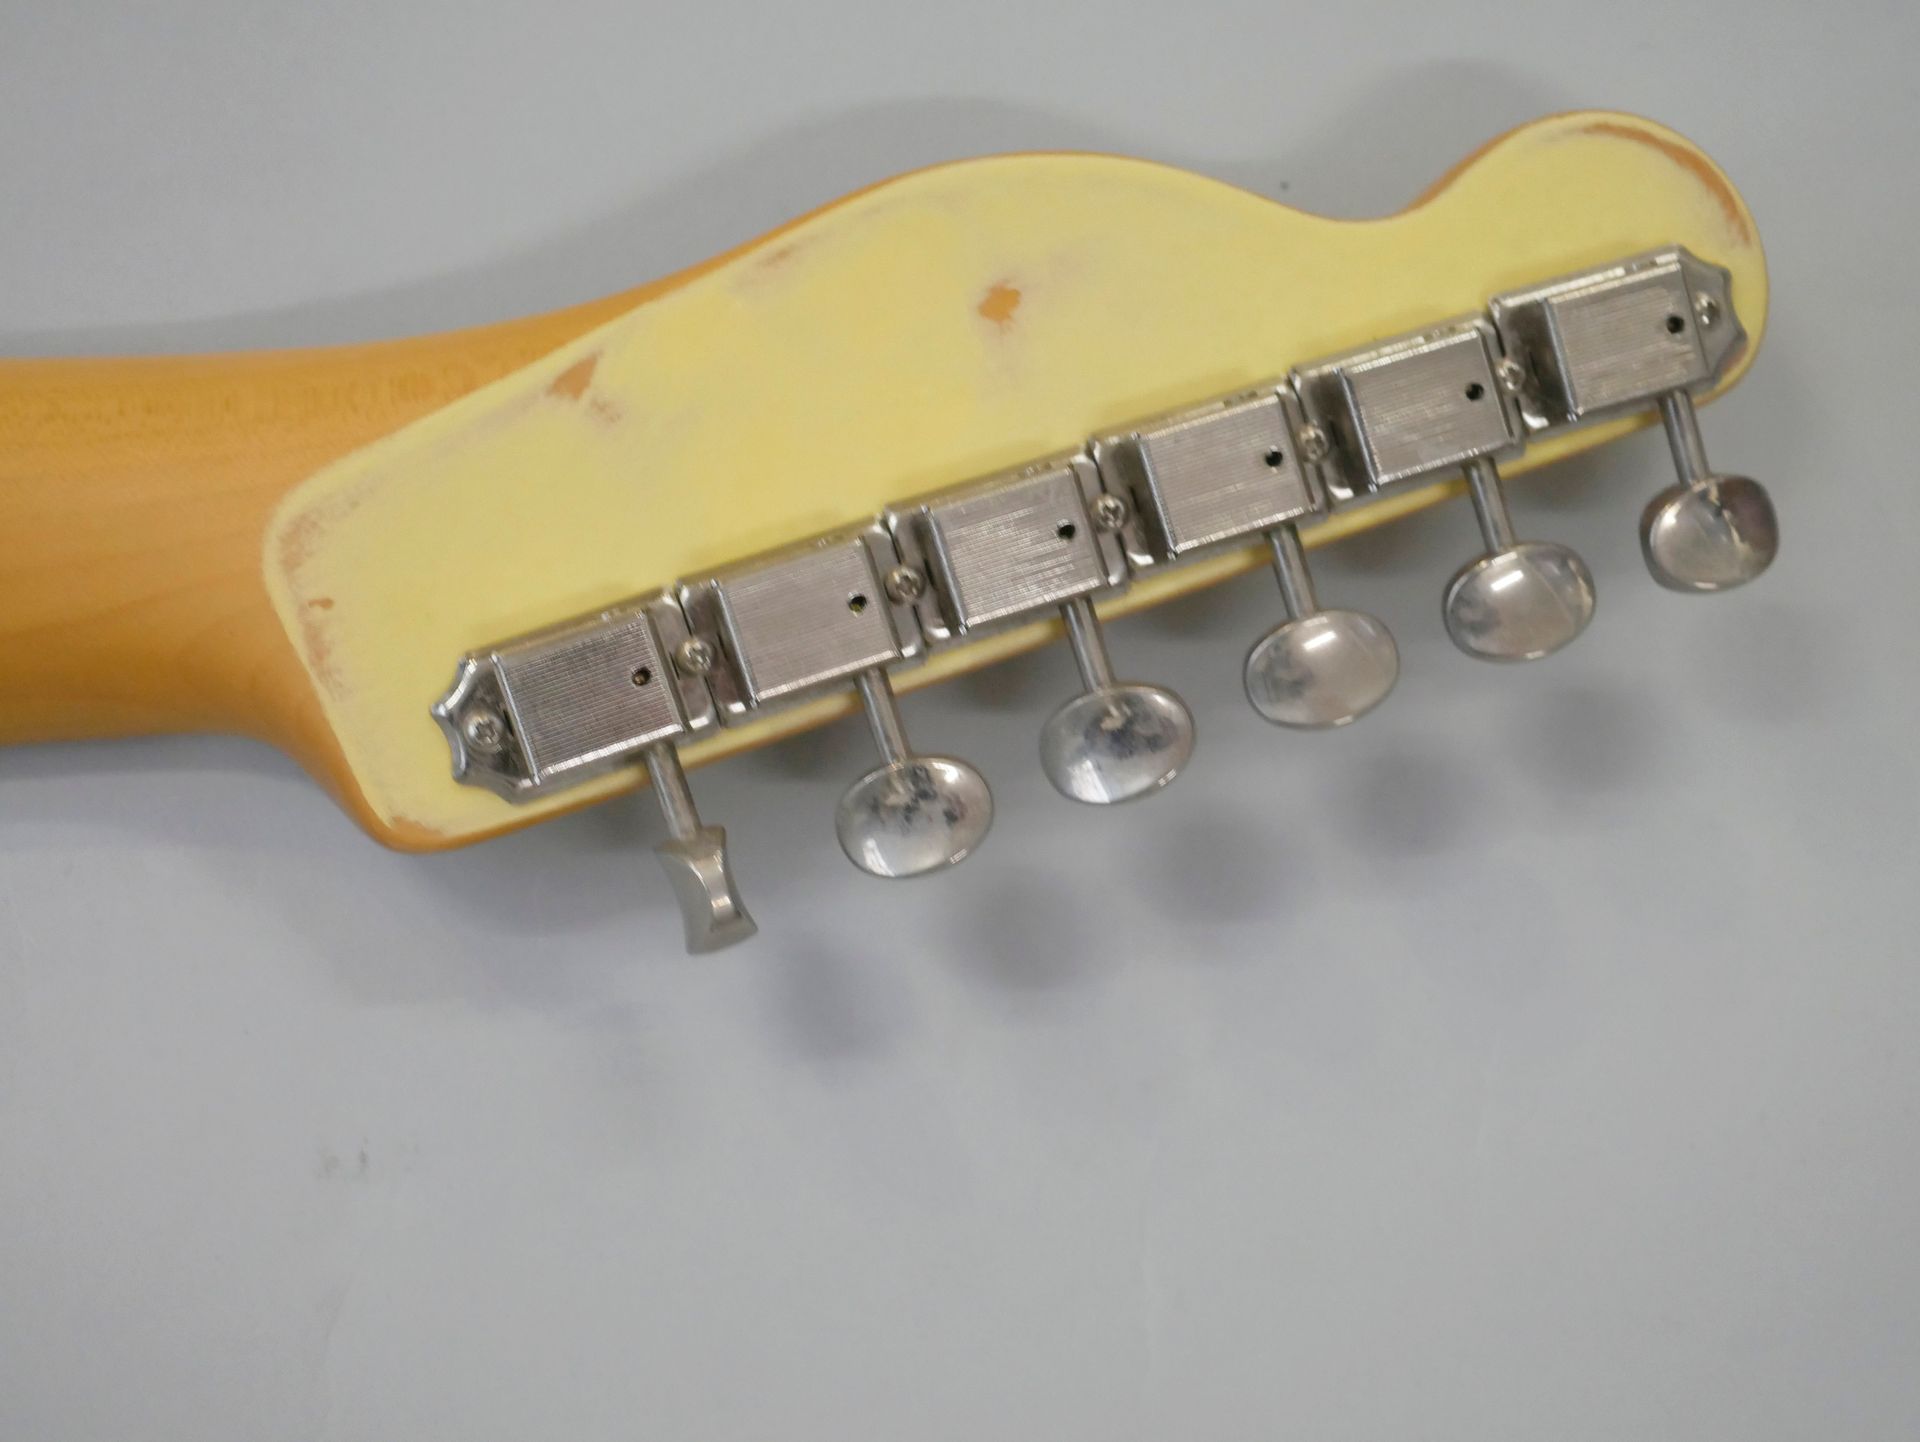 Null 佚名 实体电吉他型号Telecaster，金黄色的表面。

状况良好，有使用痕迹。

(经测试的电子产品)